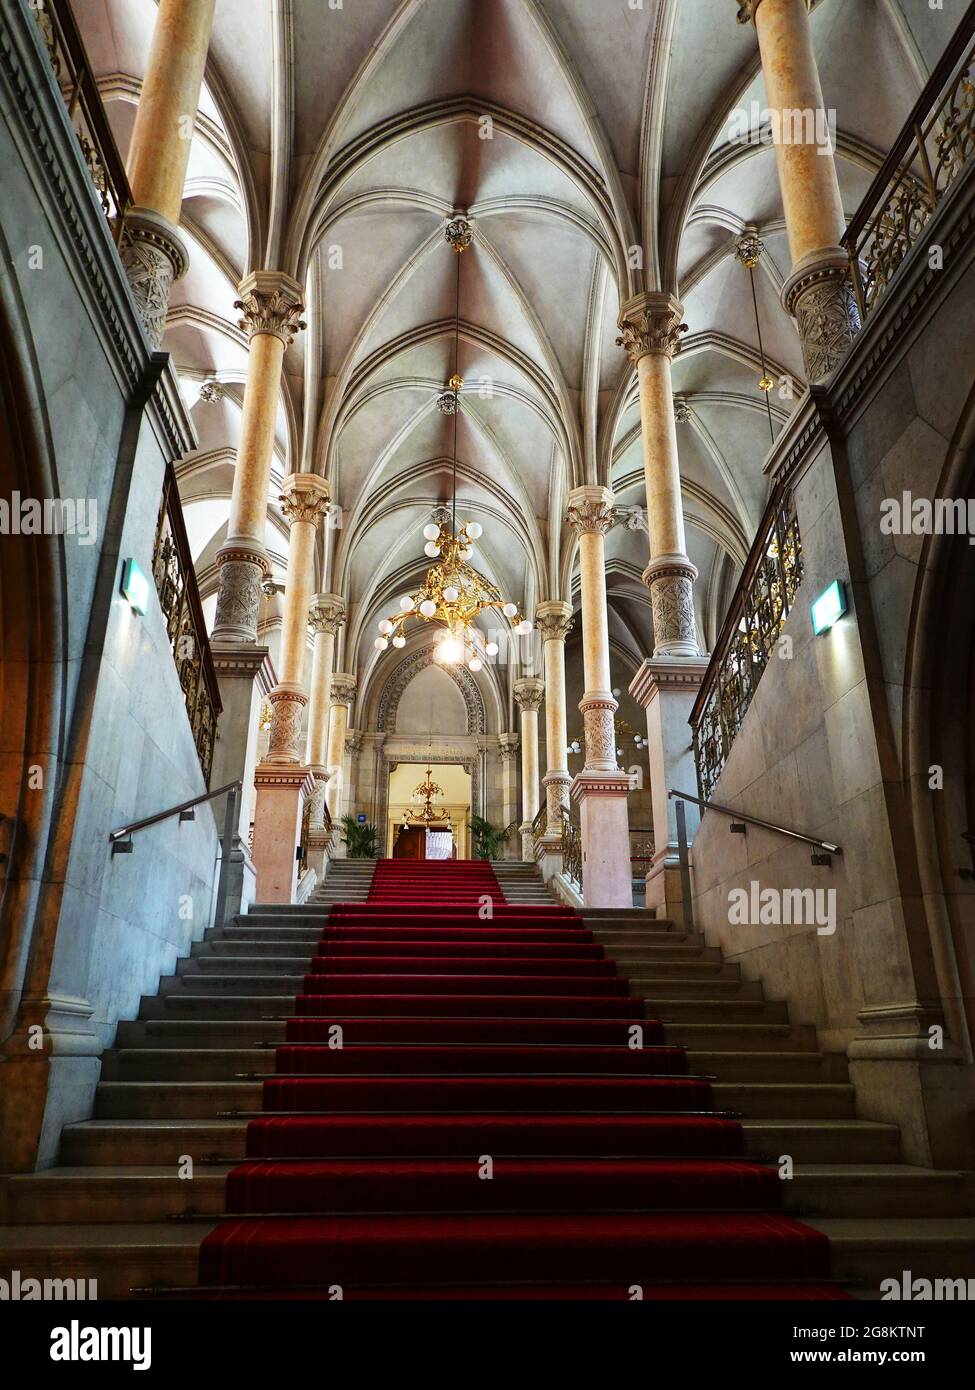 Wien, Aufgang am roten Teppich im Wiener Rathaus mit Säulen und Spitzbogengewölbe Stock Photo